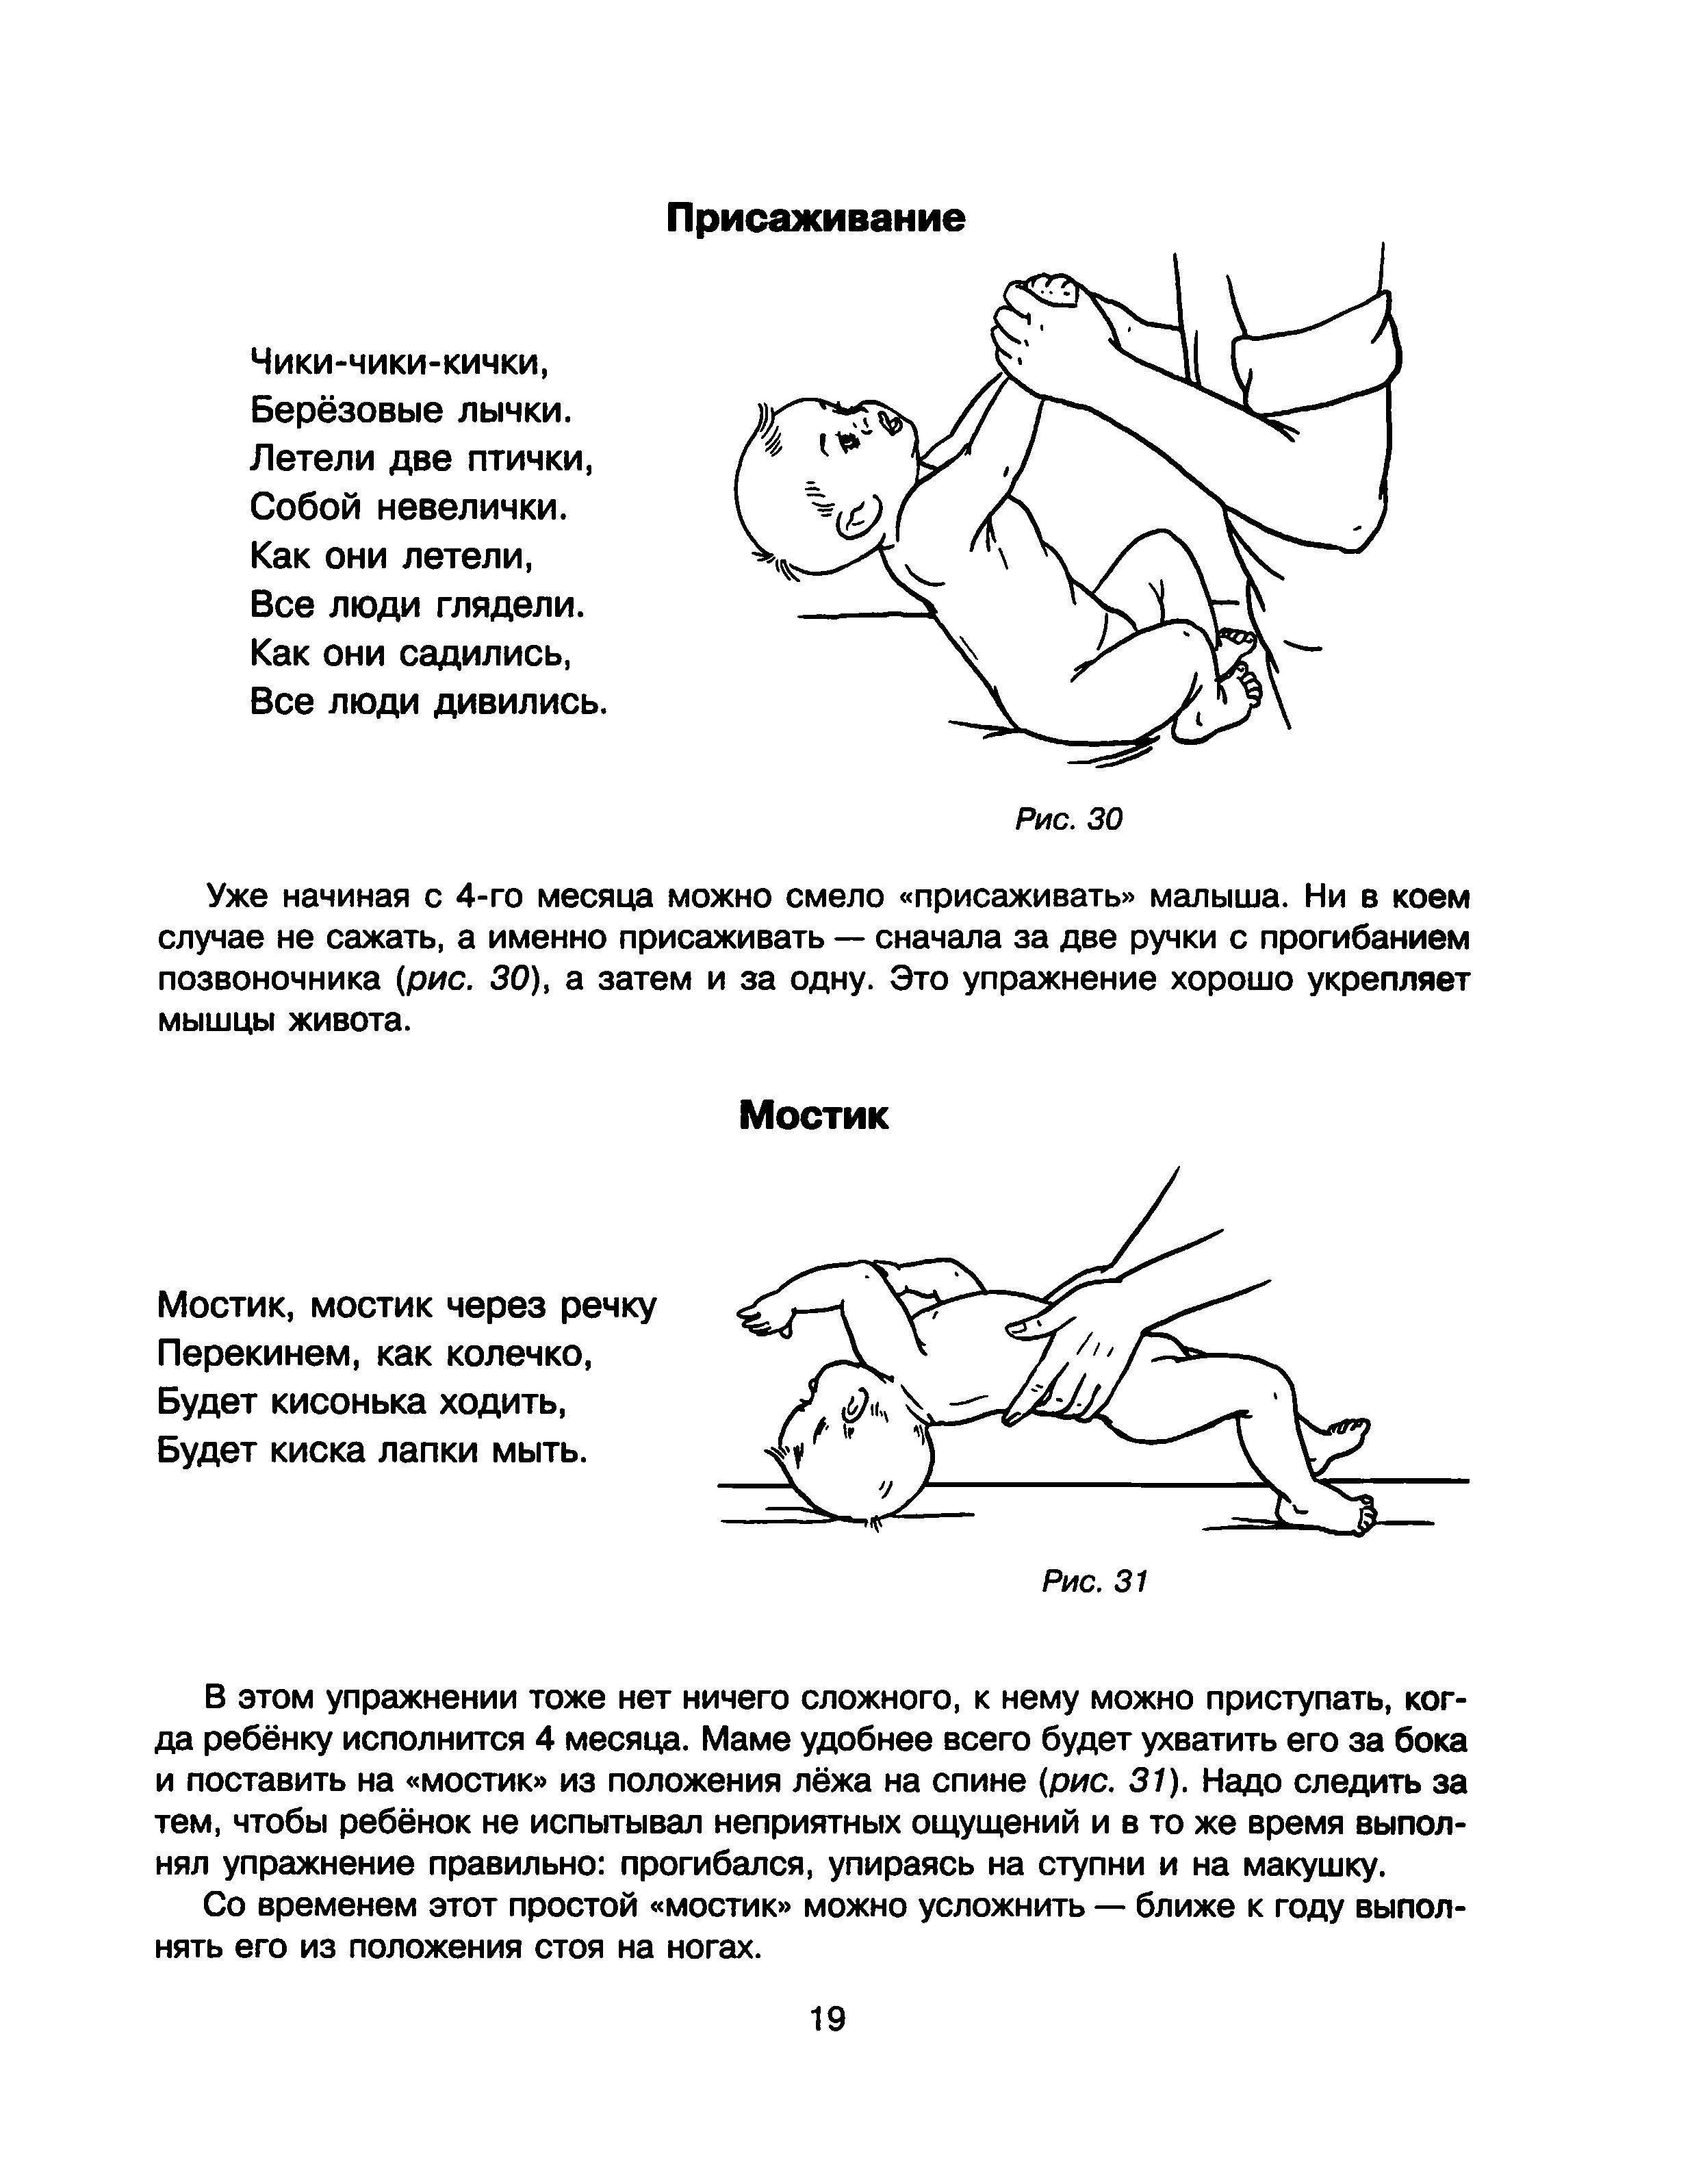 Динамическая гимнастика для грудничков: полезные упражнения